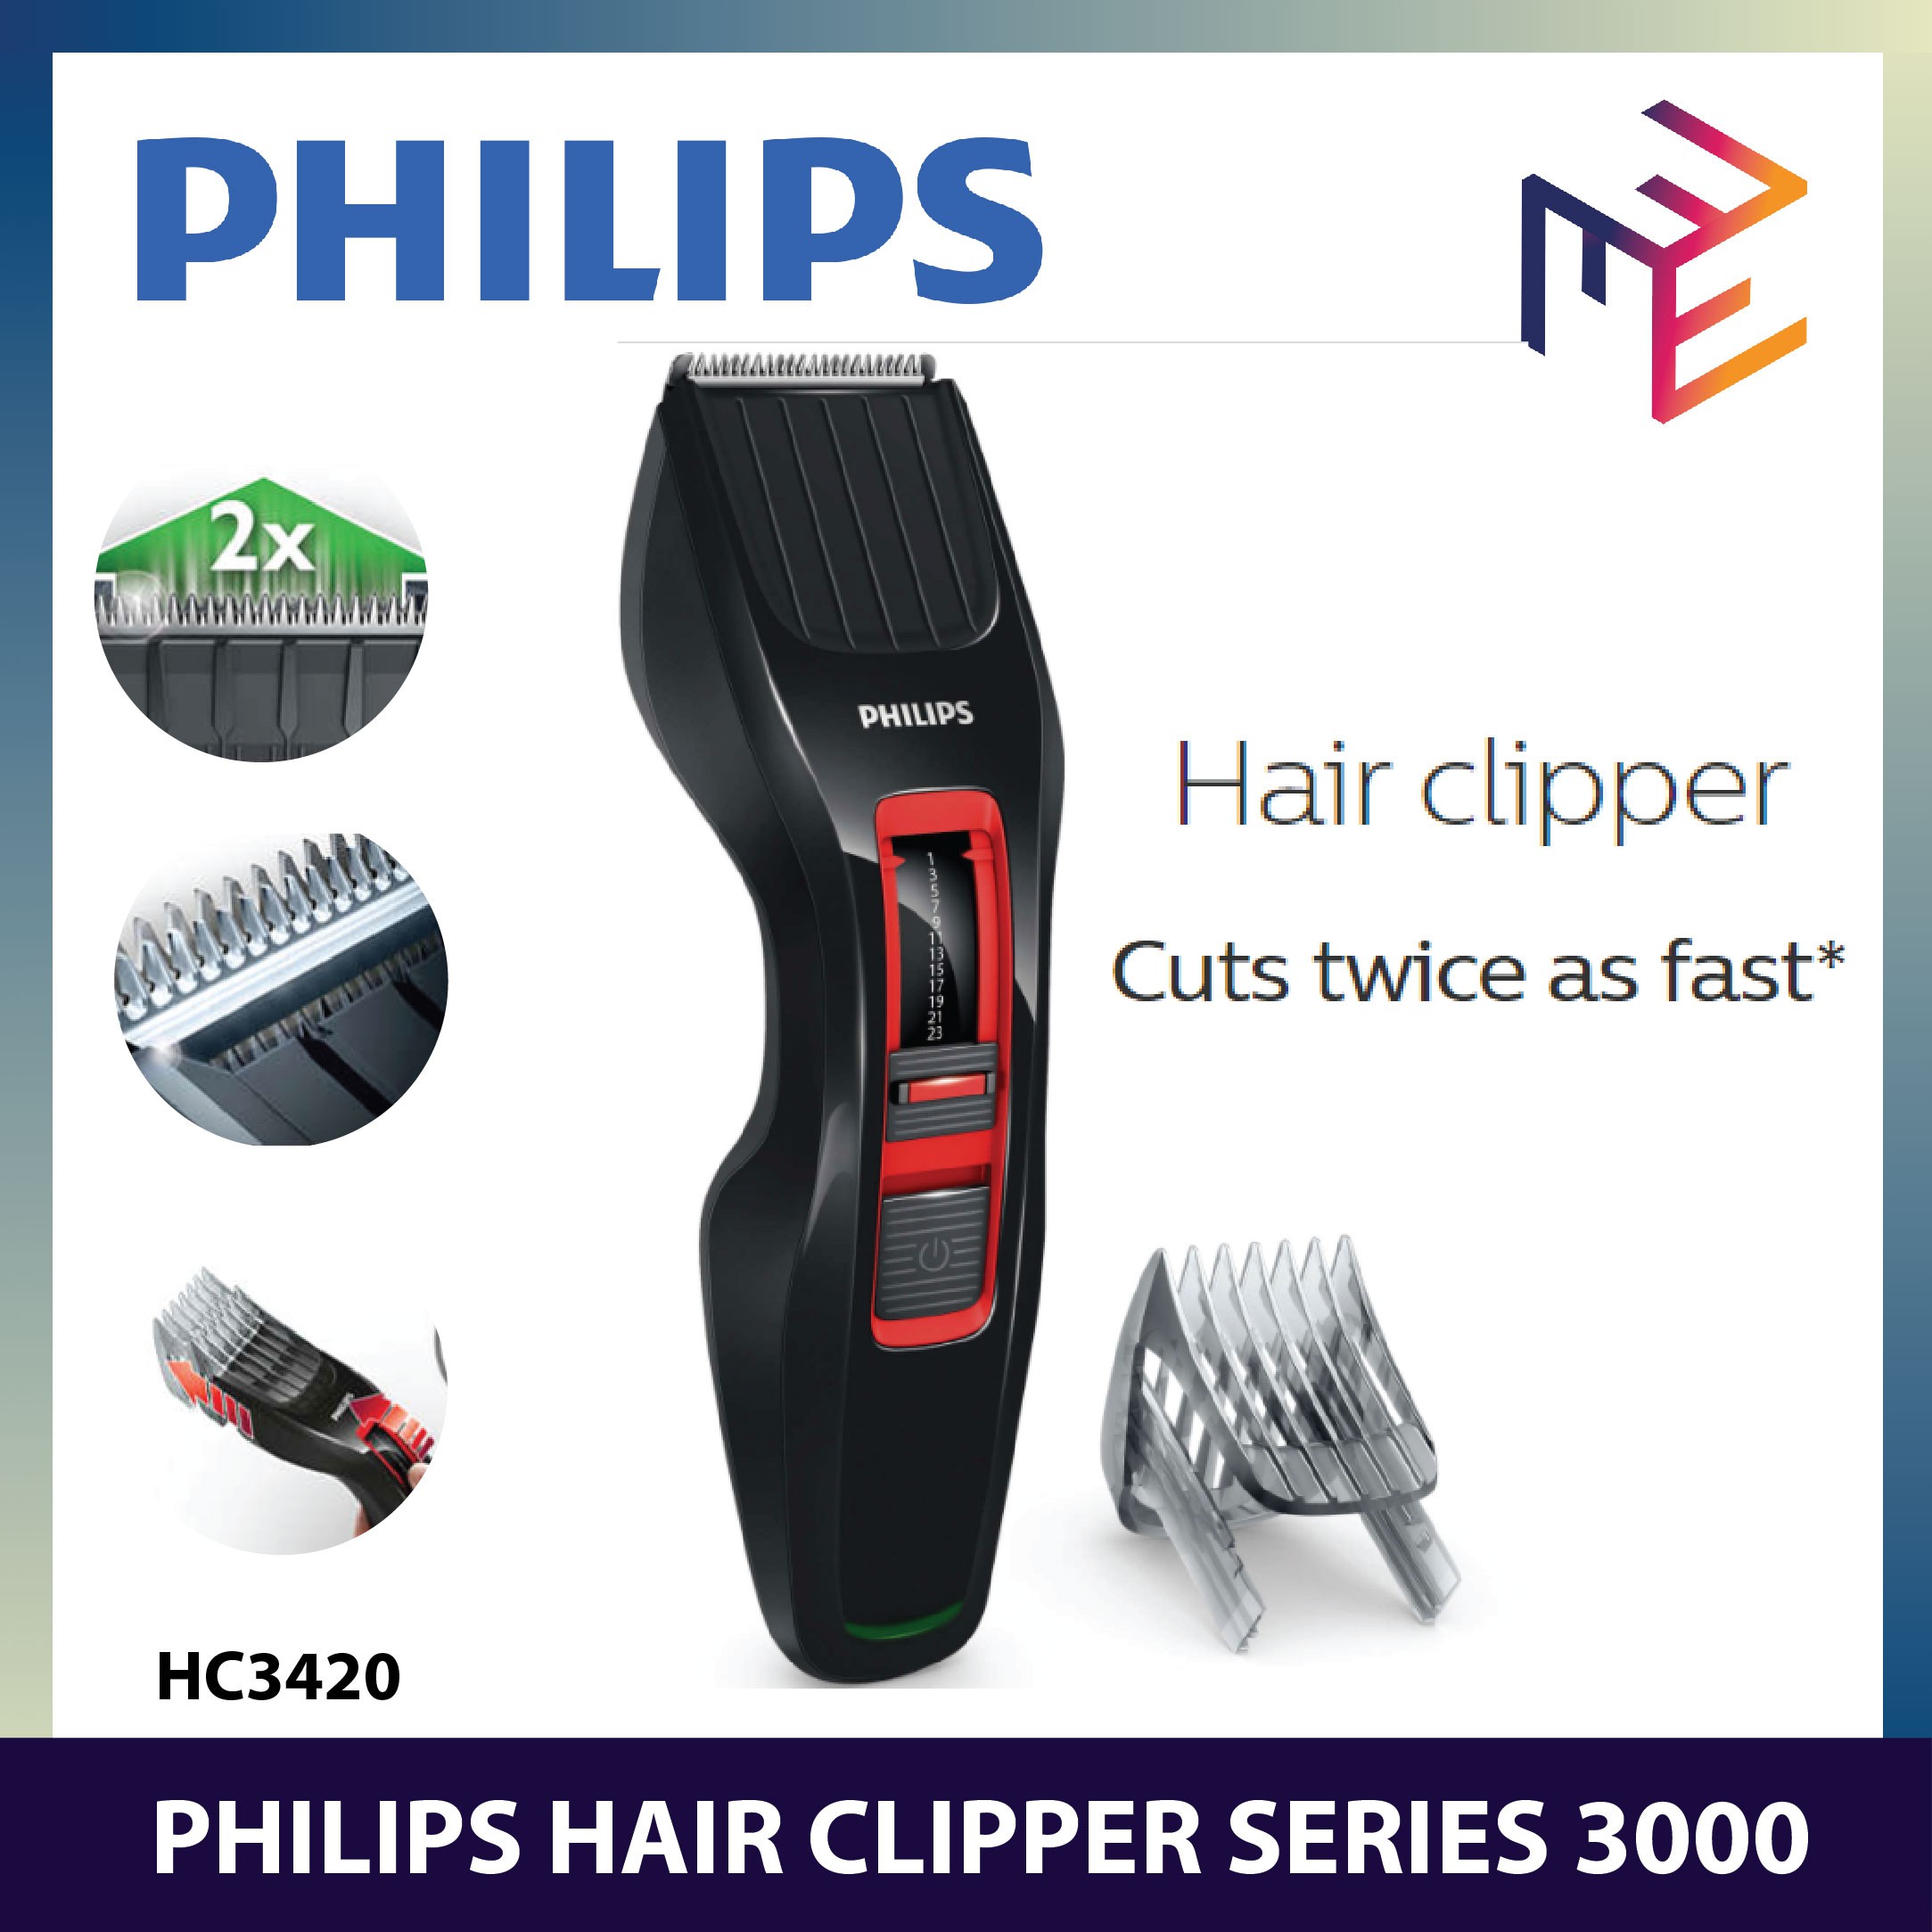 philips hair clipper shopee